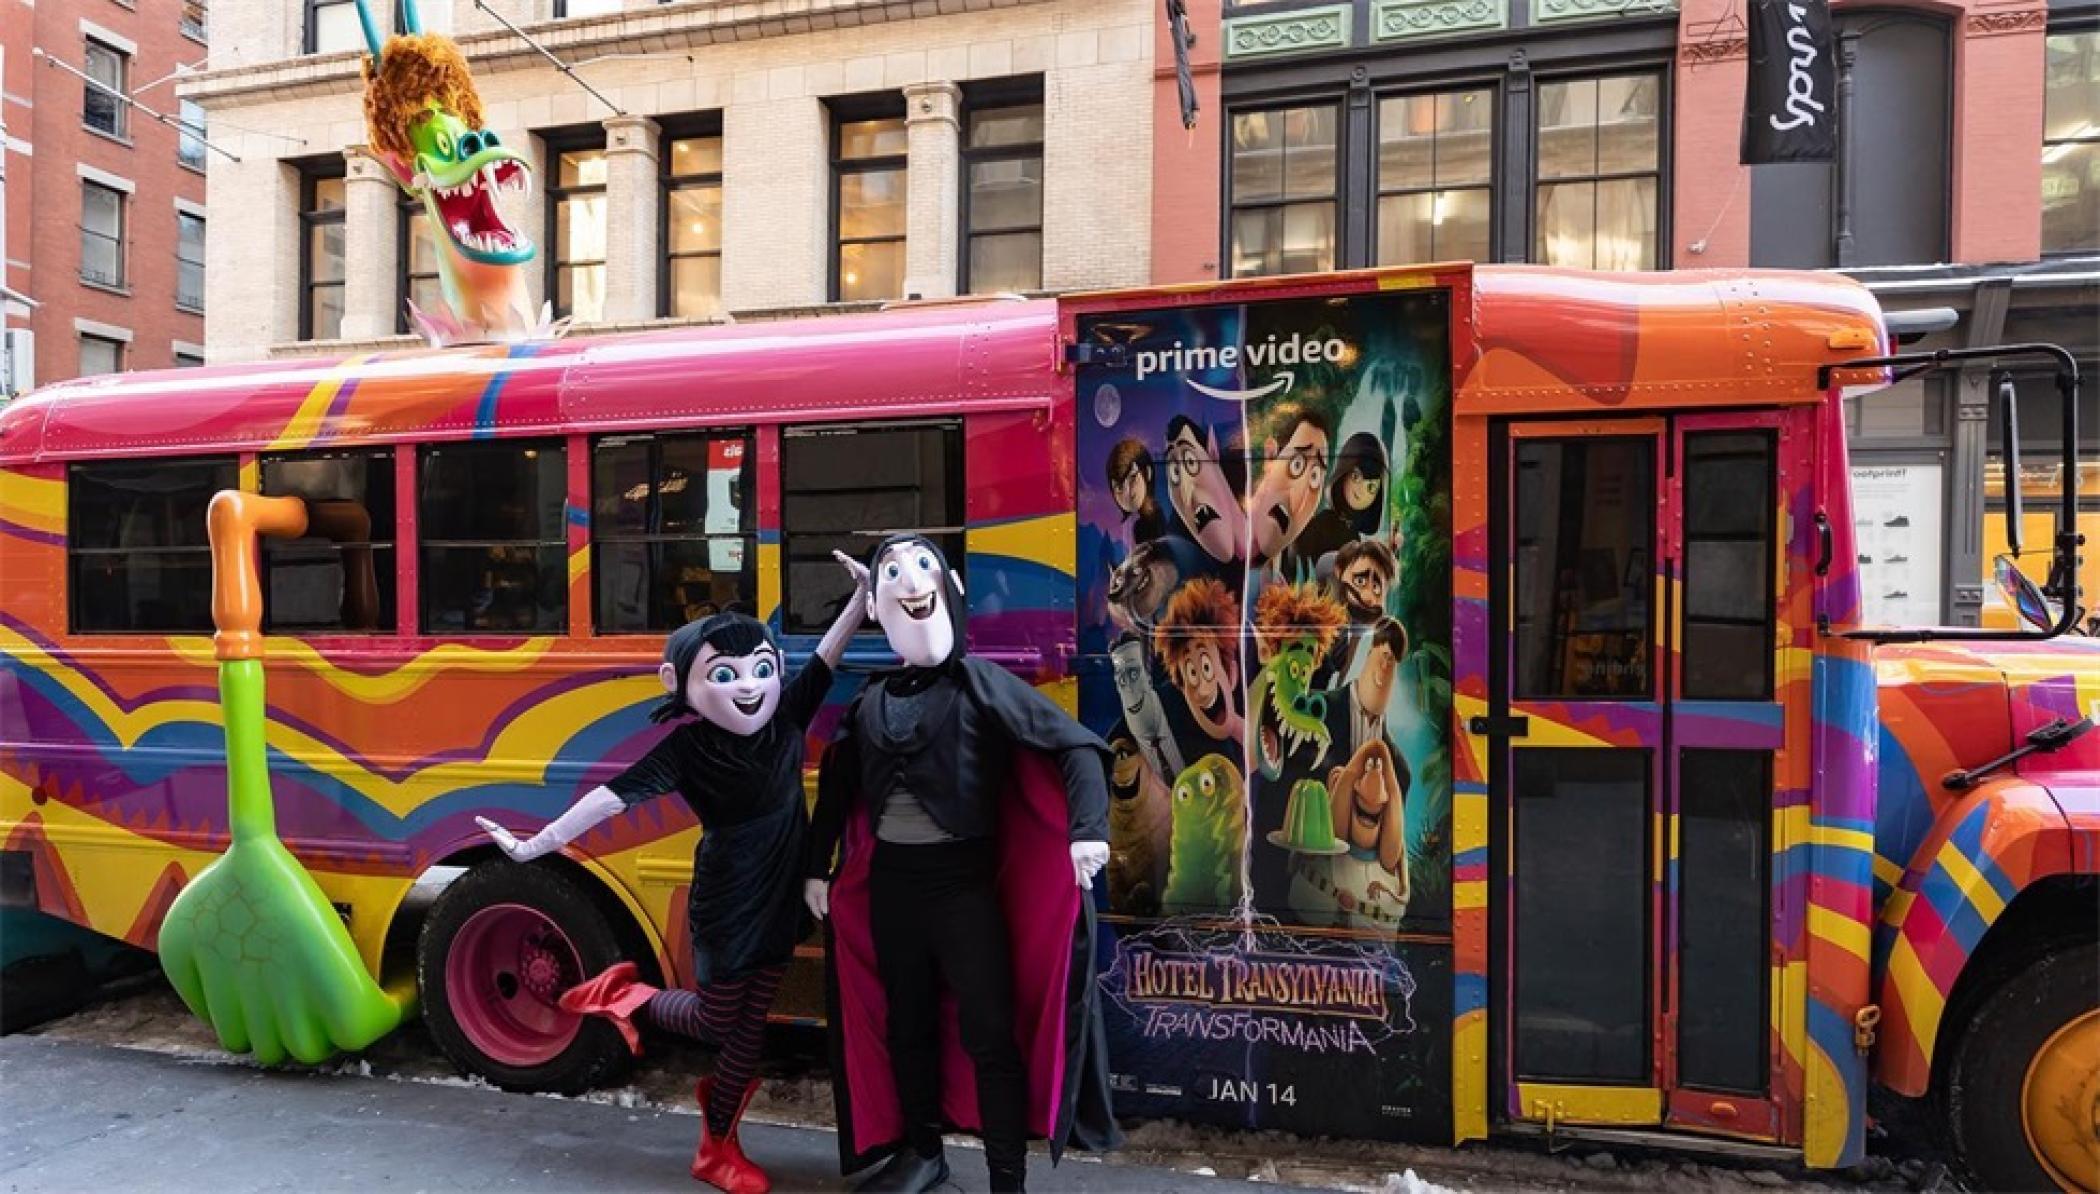 《精灵旅社:变形狂魔》巴士巡回推广活动策划把校车改成了电影中的模样